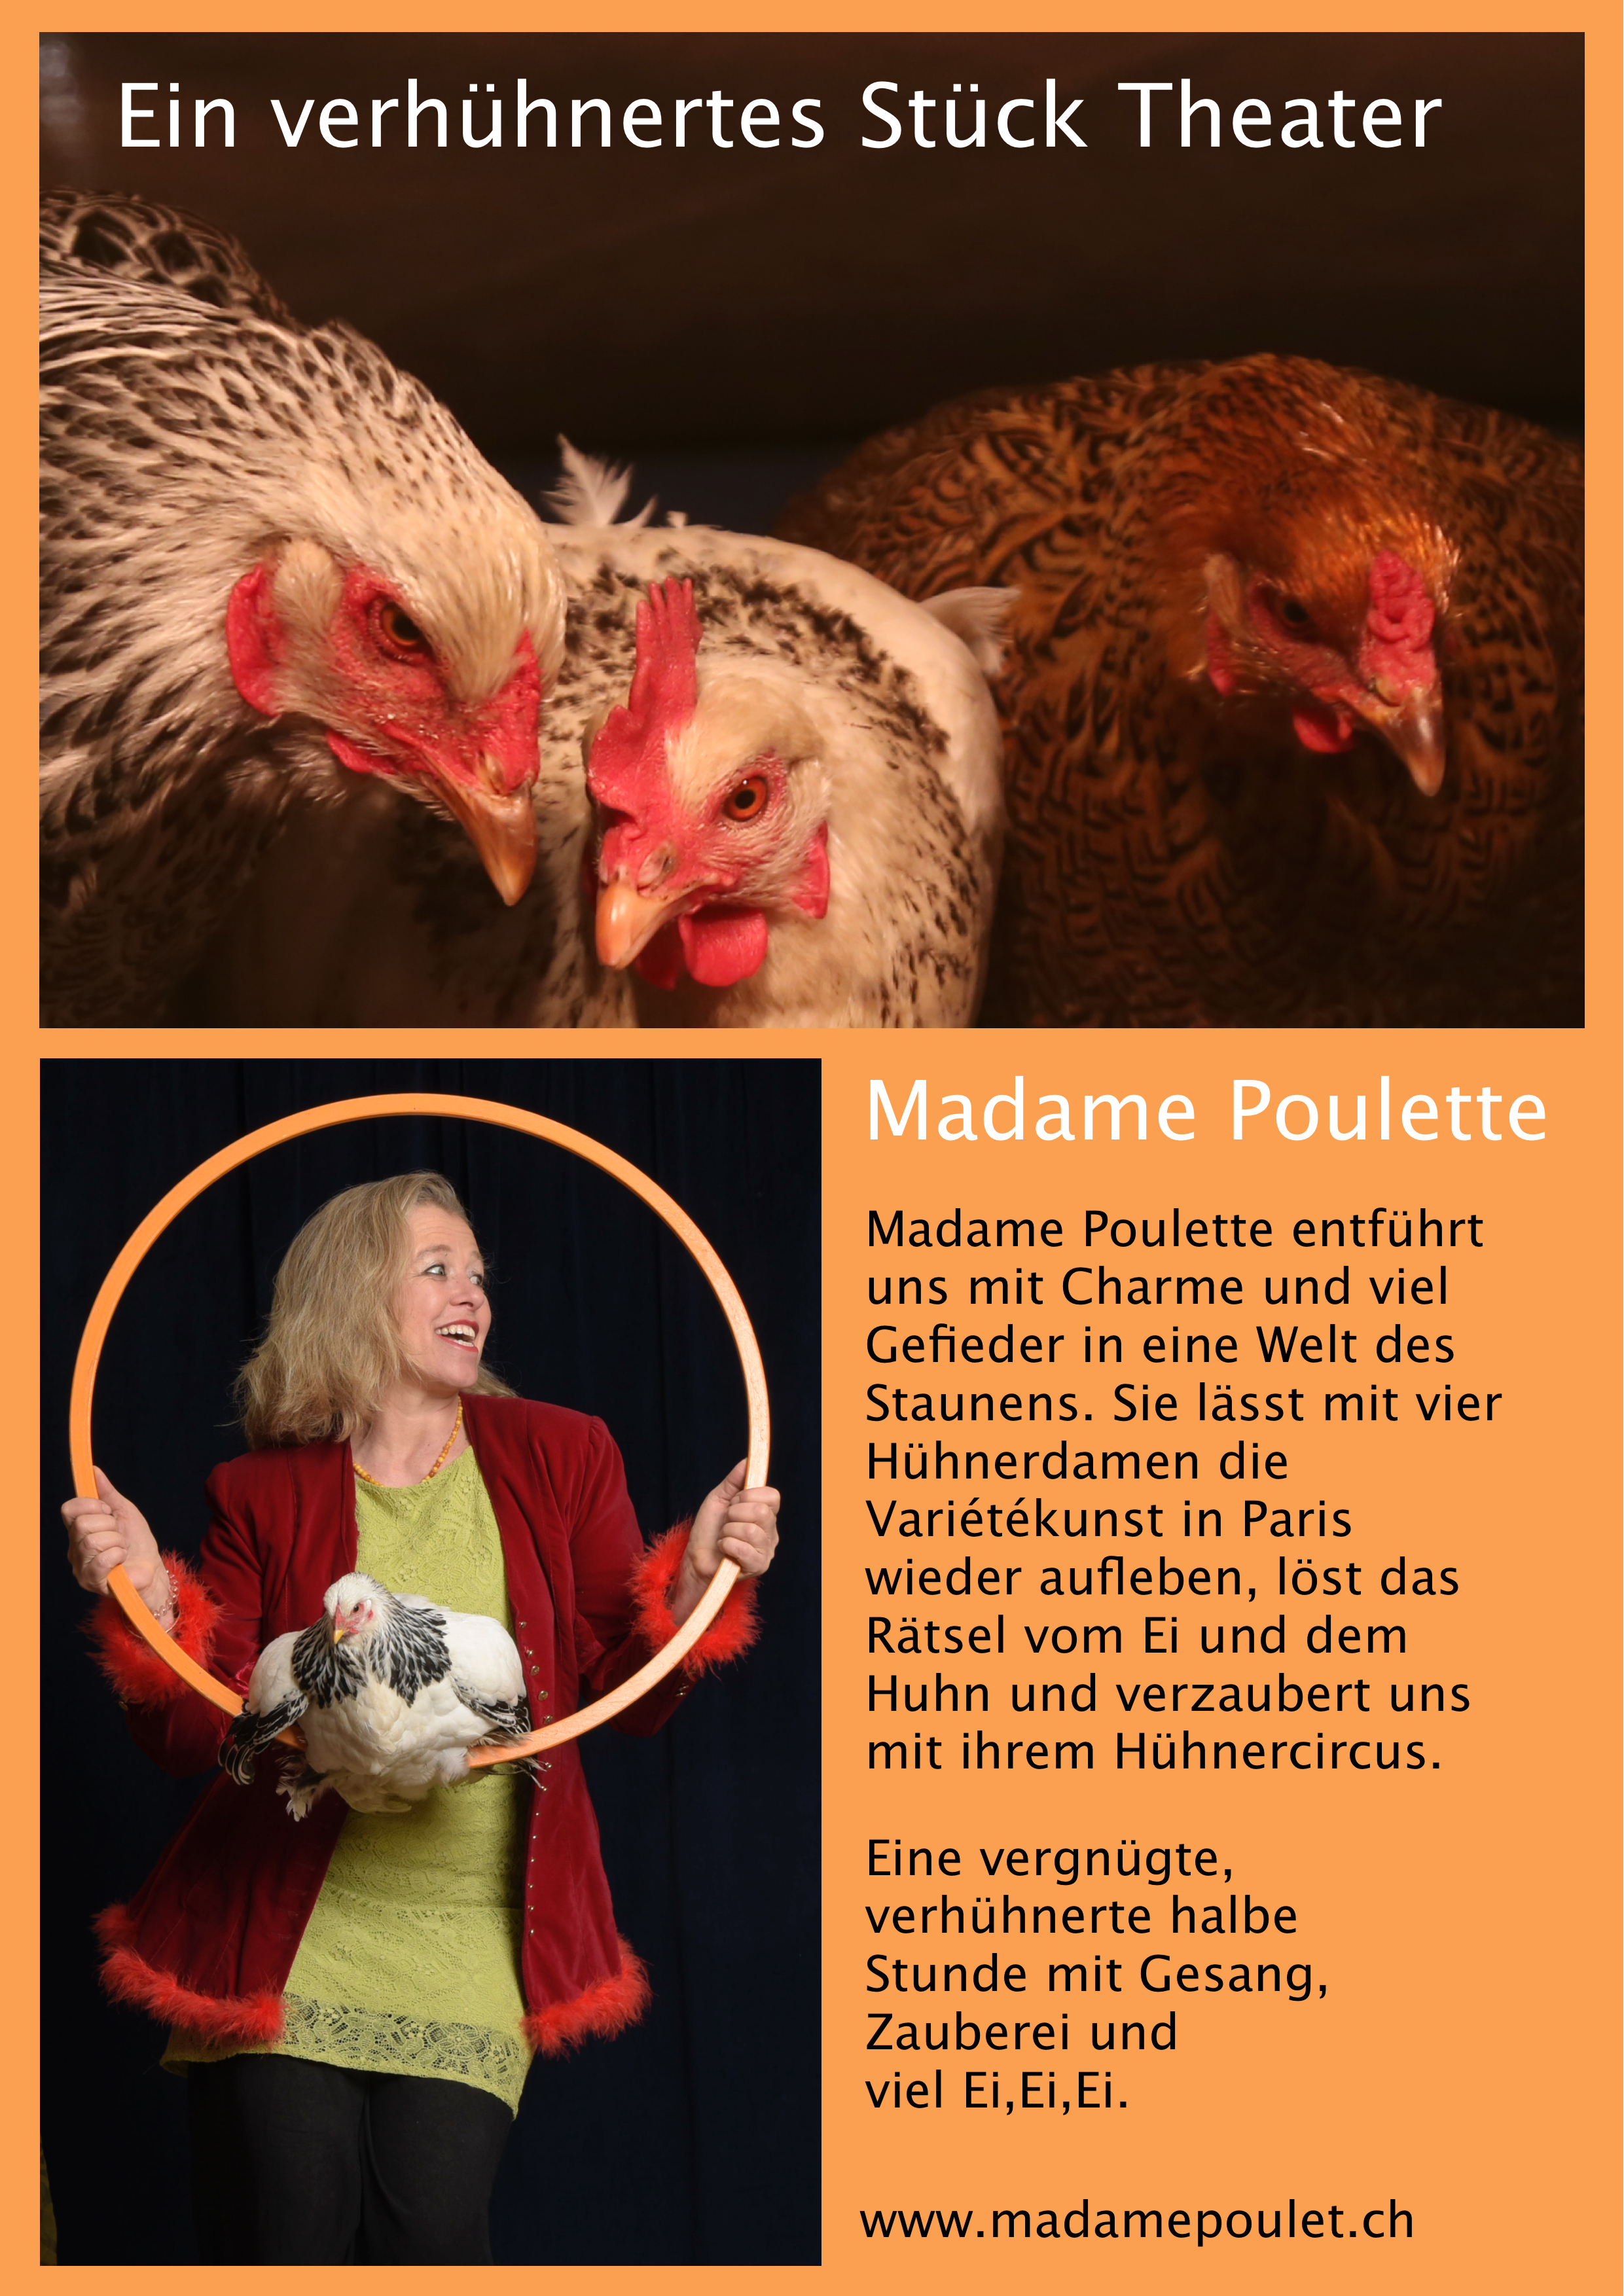 plakat madame poulette 2